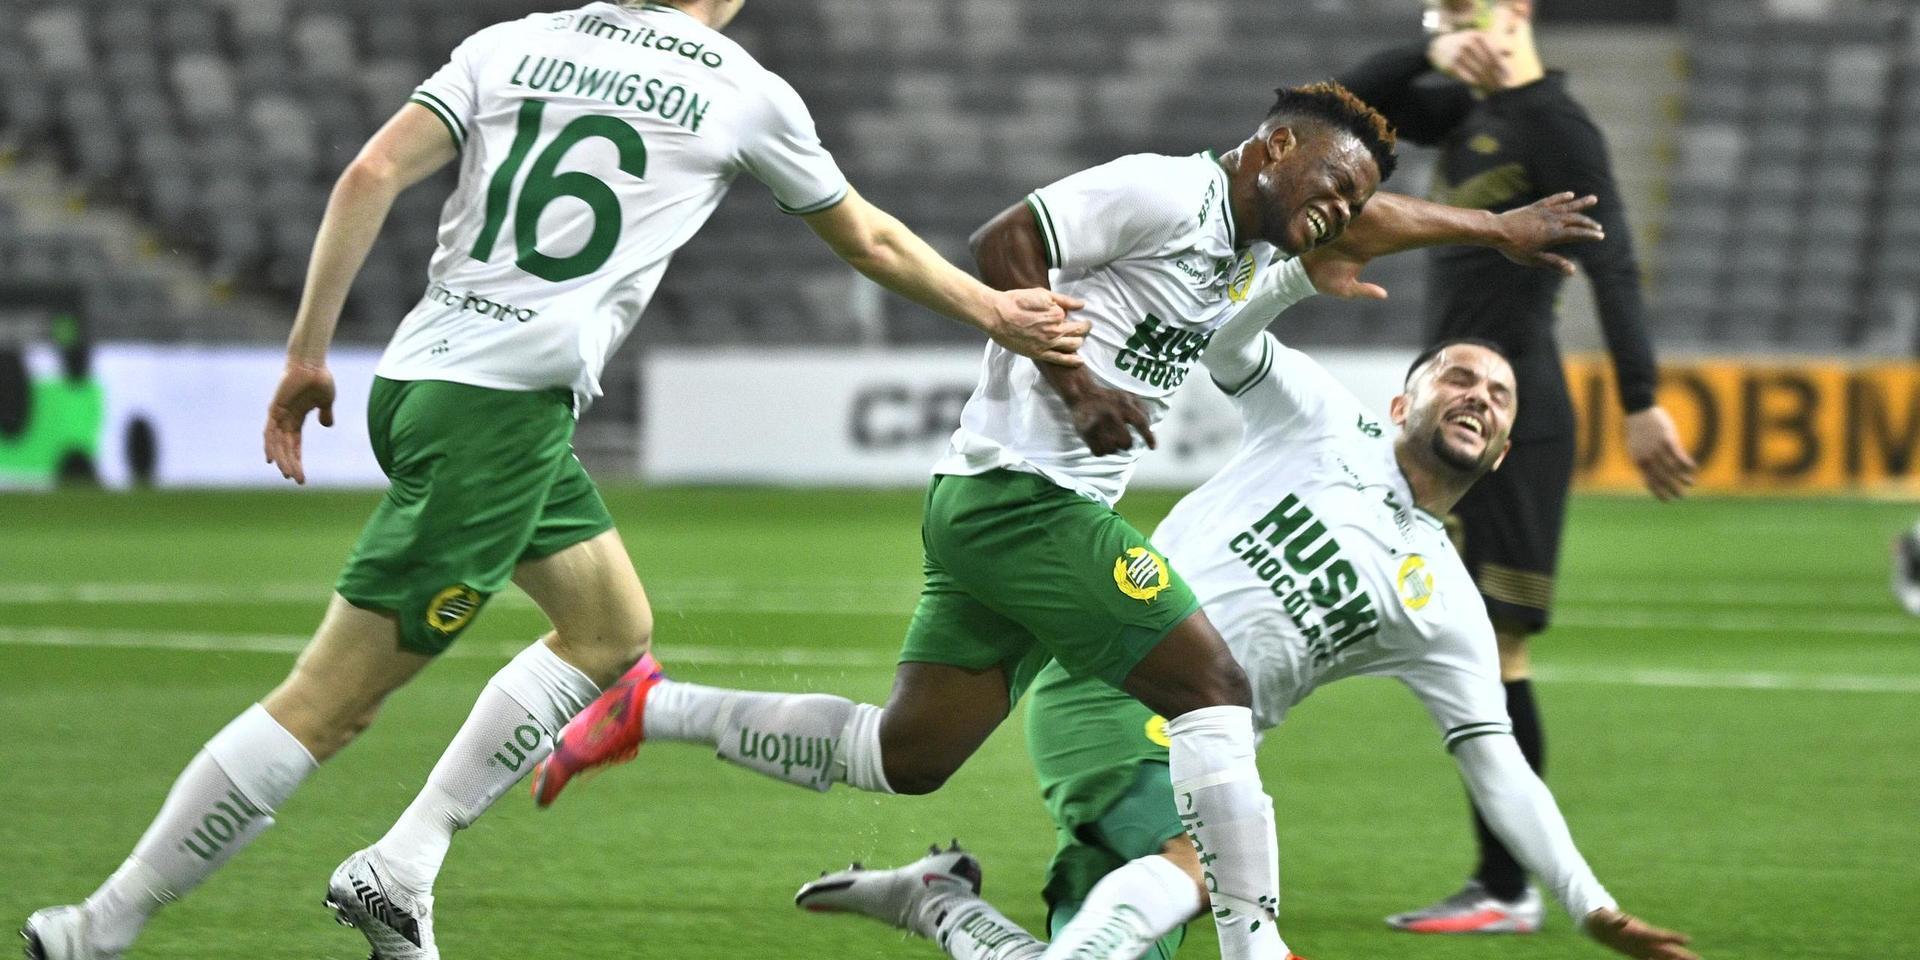 Hammarbys Akinkunmi Ayobami Amoo jublar efter att ha gjort 1–0 mot AIK.